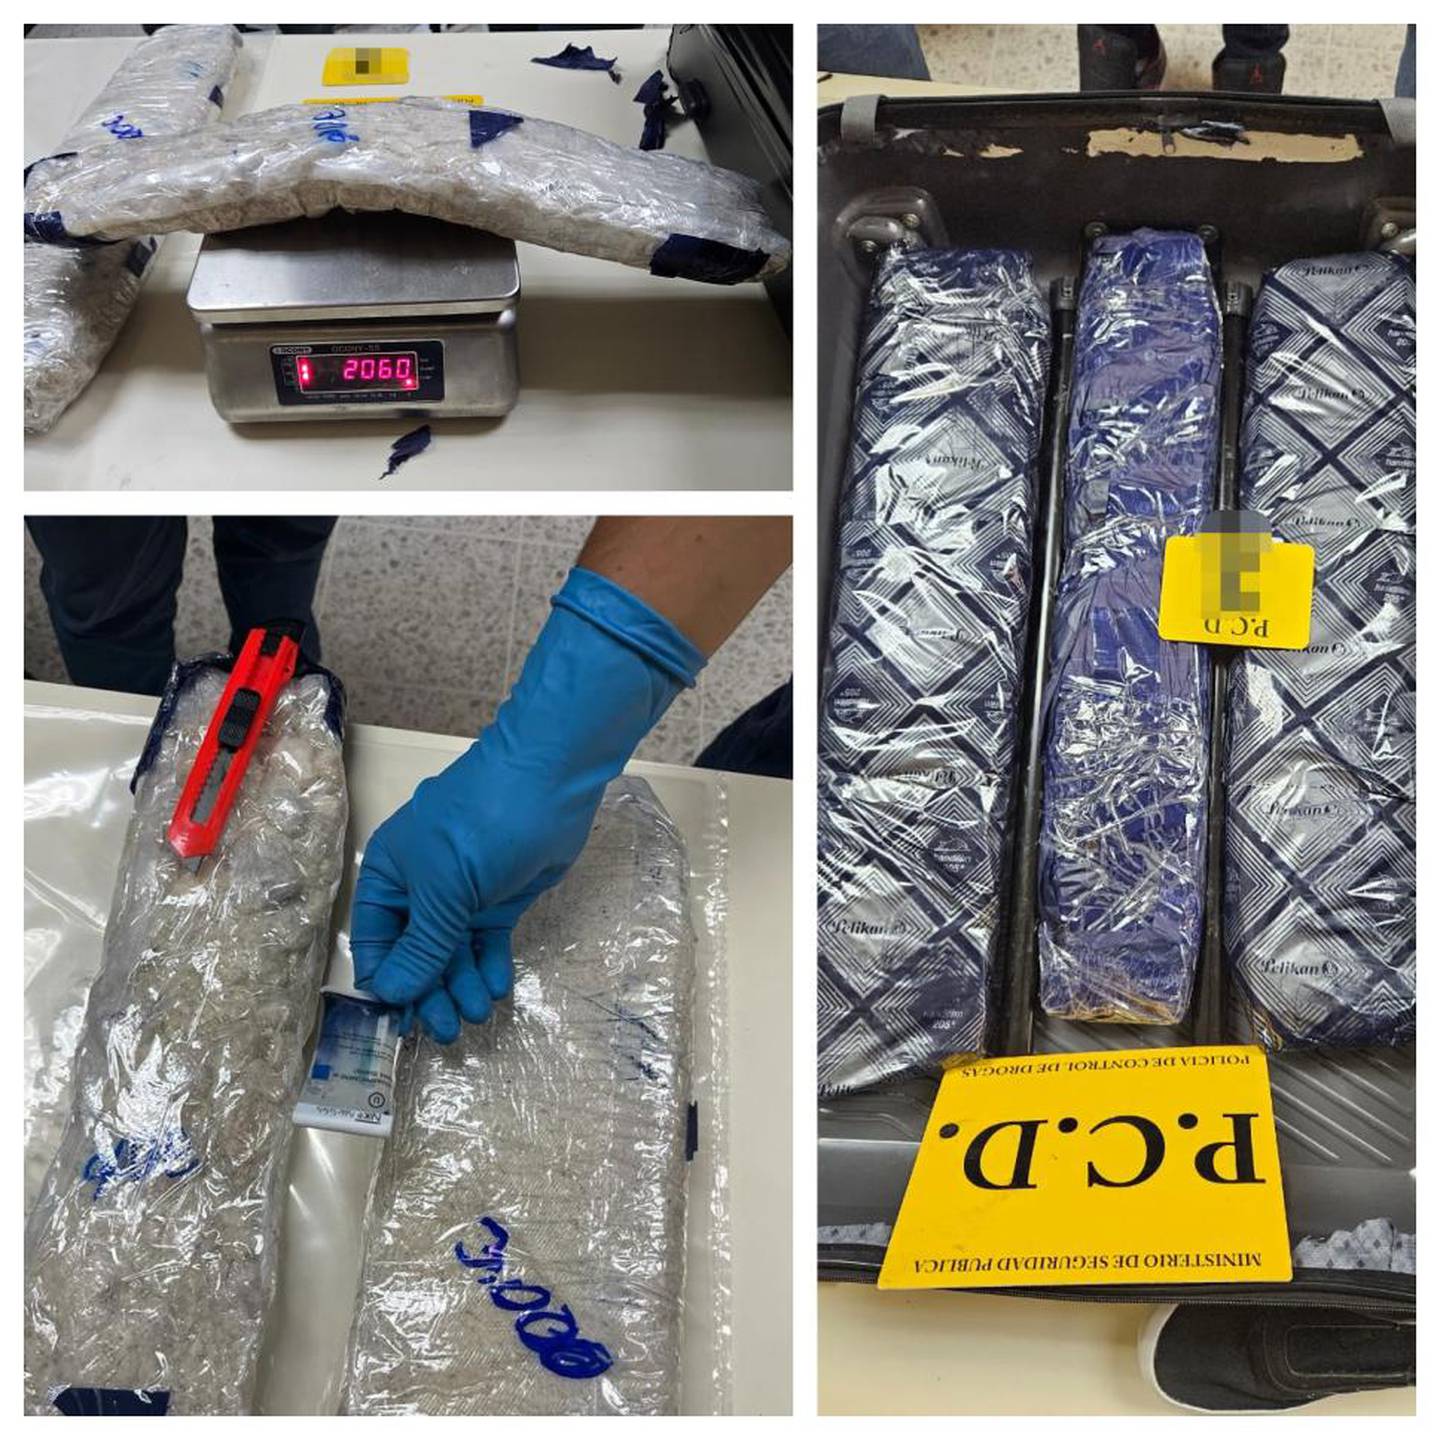 Las metanfetaminas venían escondidas en la maleta que traía el extranjero de origen ucraniano. Más de 8 kilos fueron decomisados por la Policía.